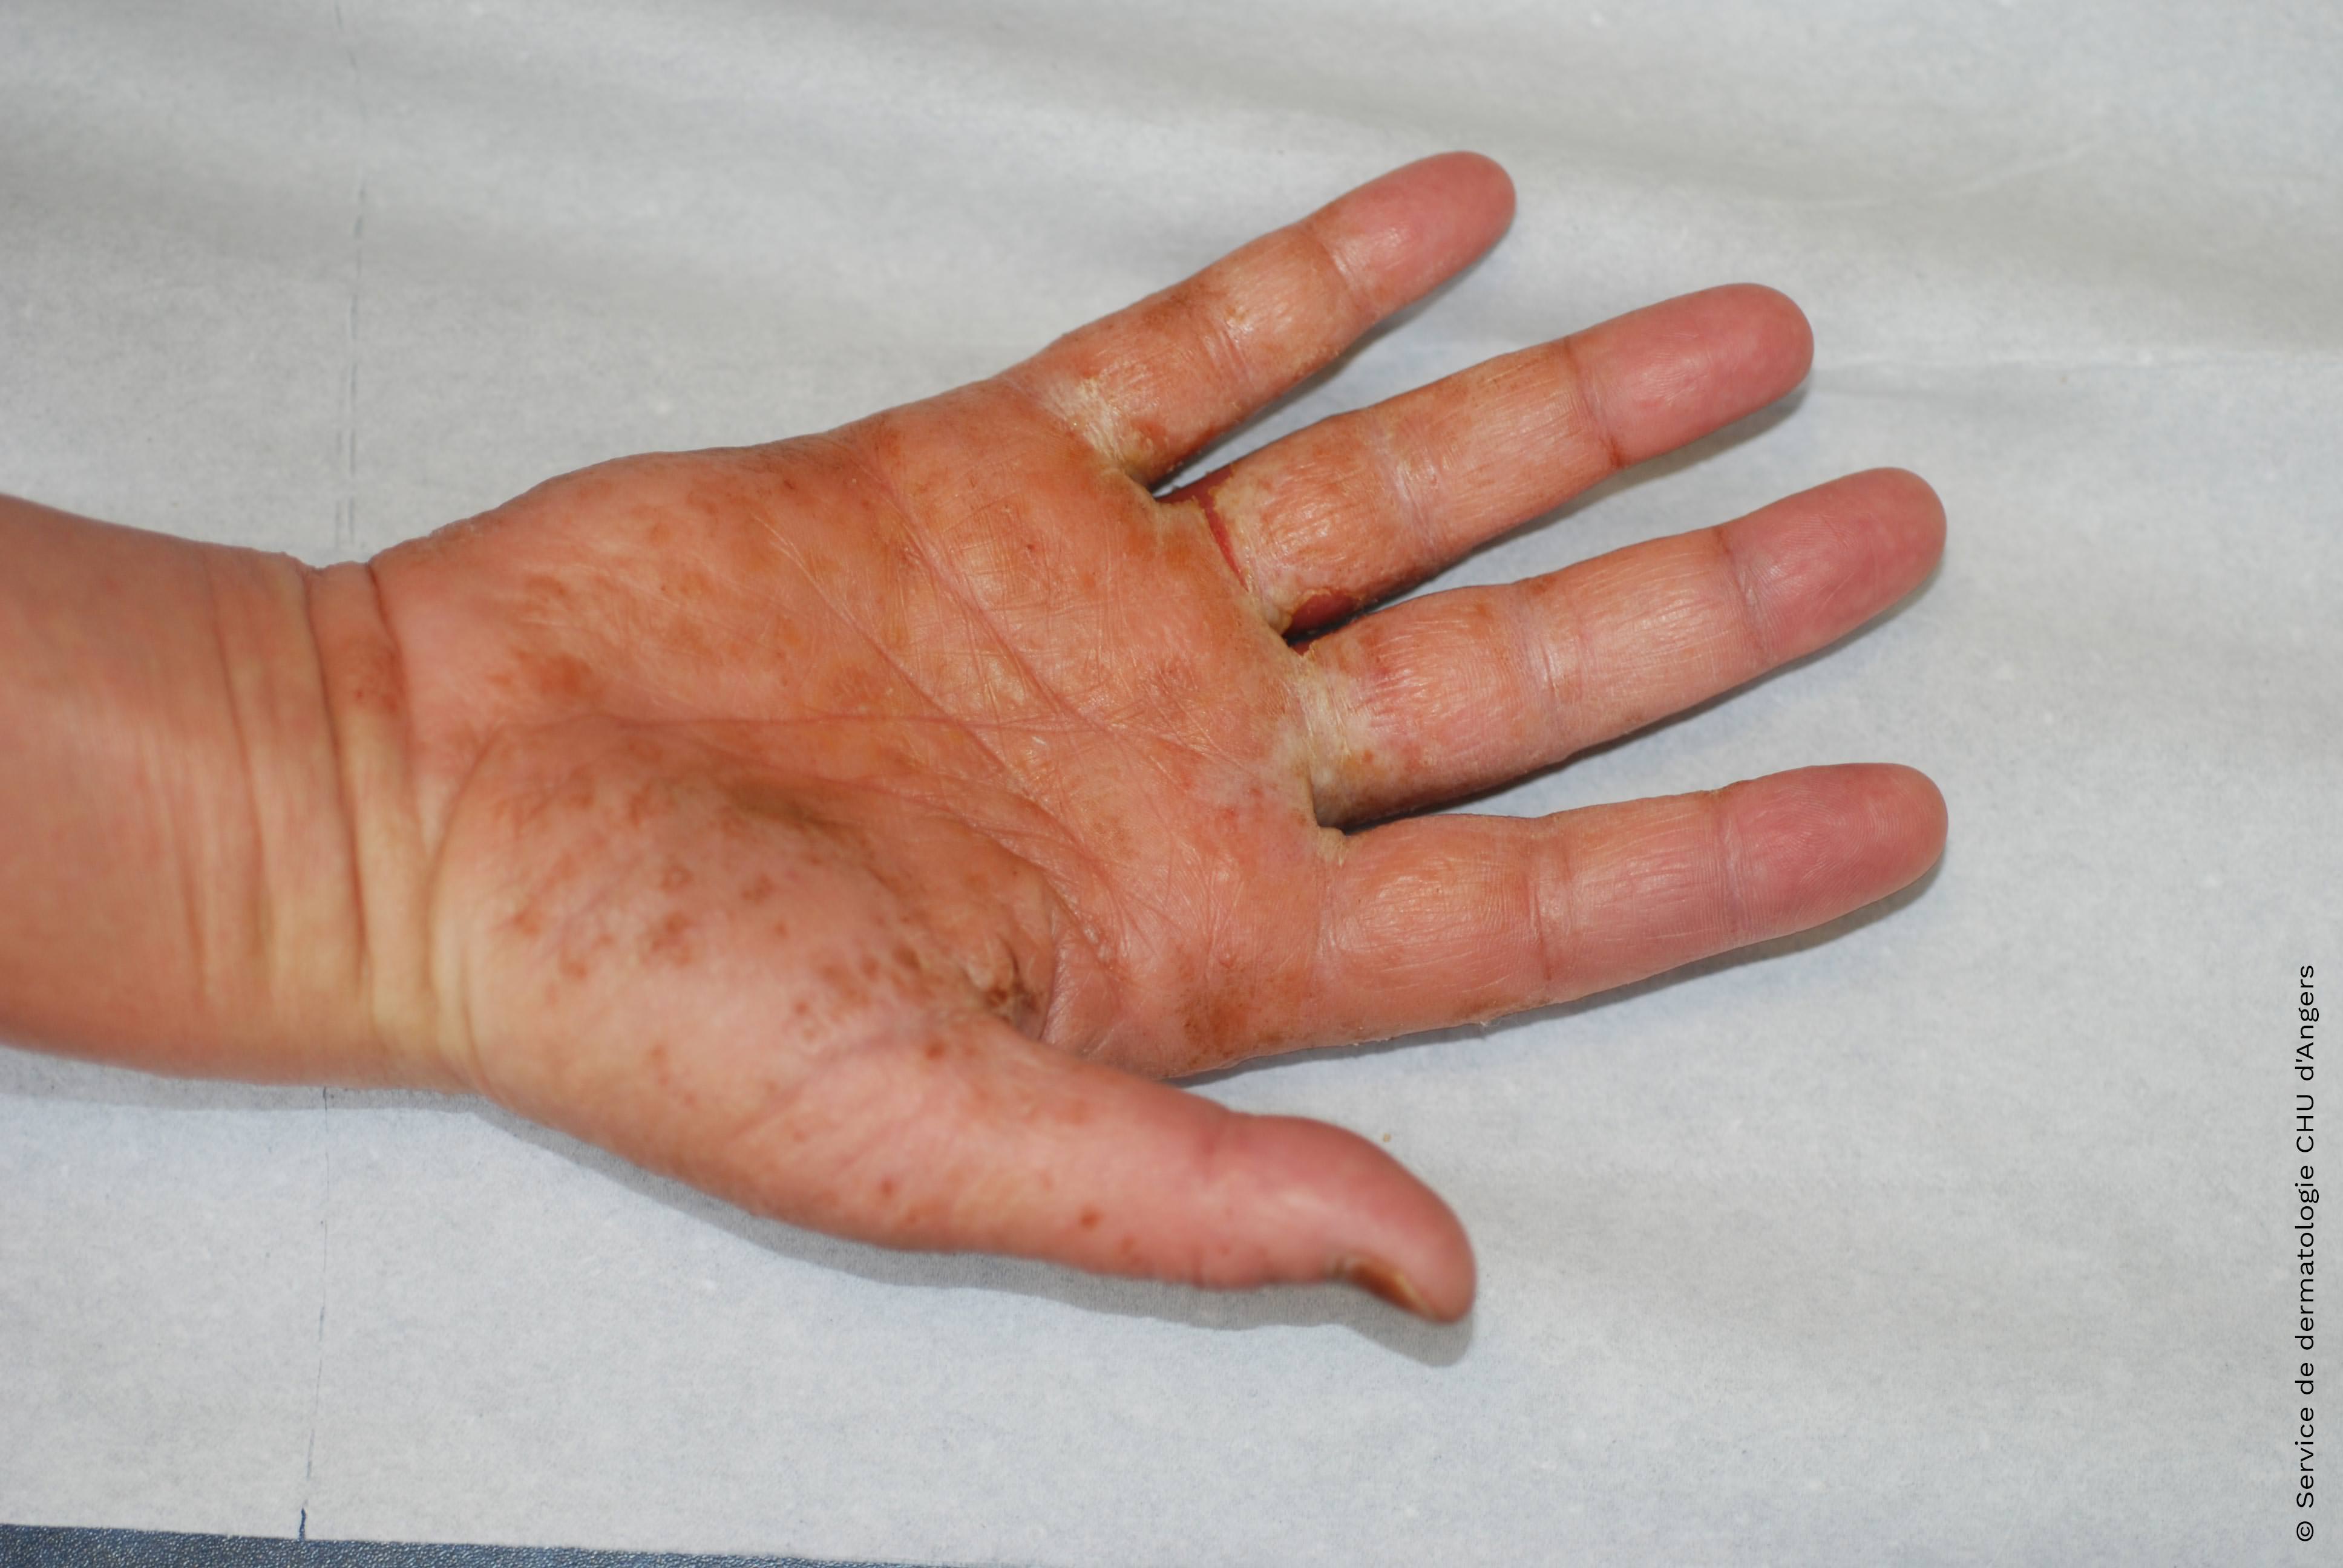 Eczéma allergique aigu de la paume des mains